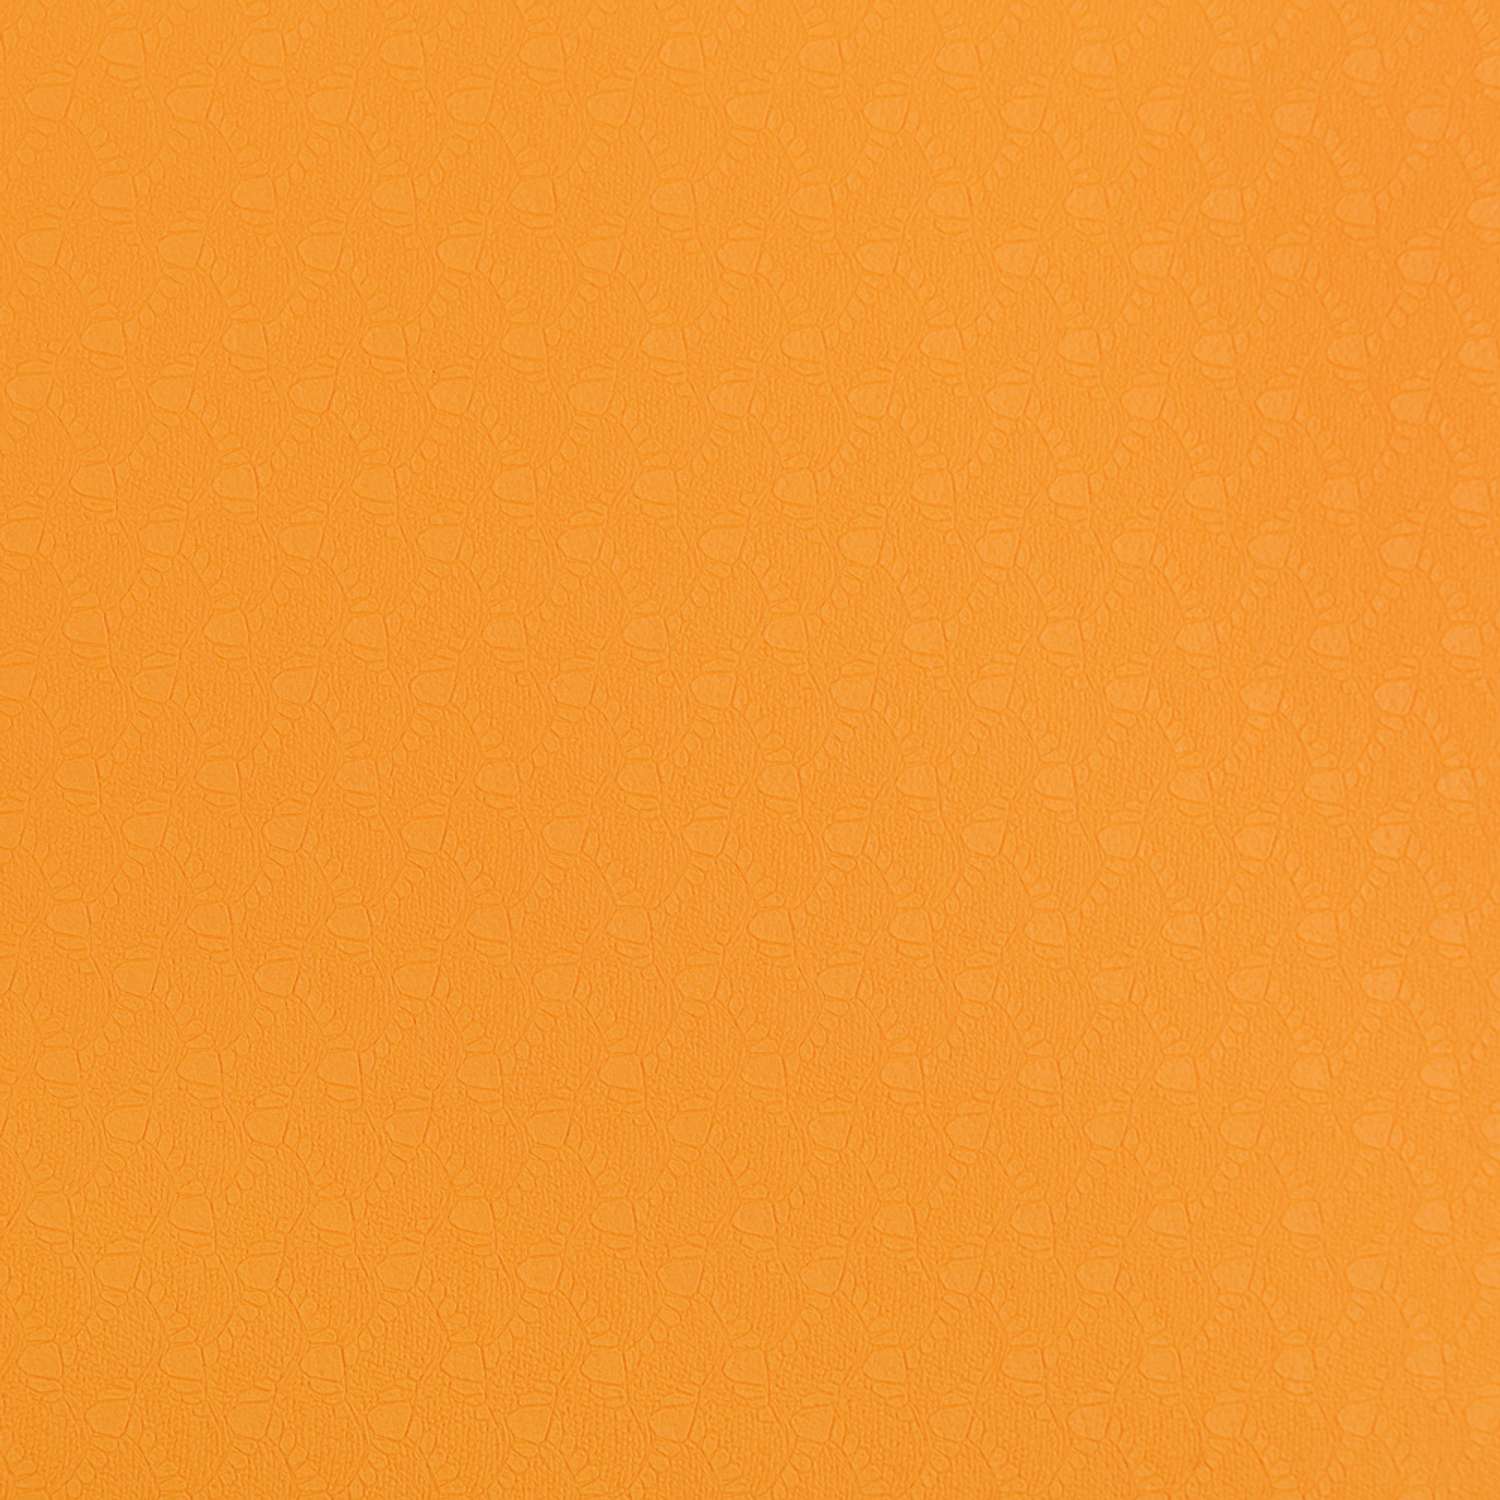 Коврик для йоги STRONG BODY двухсторонний. черно-оранжевый 183см х 61см х 0.6см - фото 5